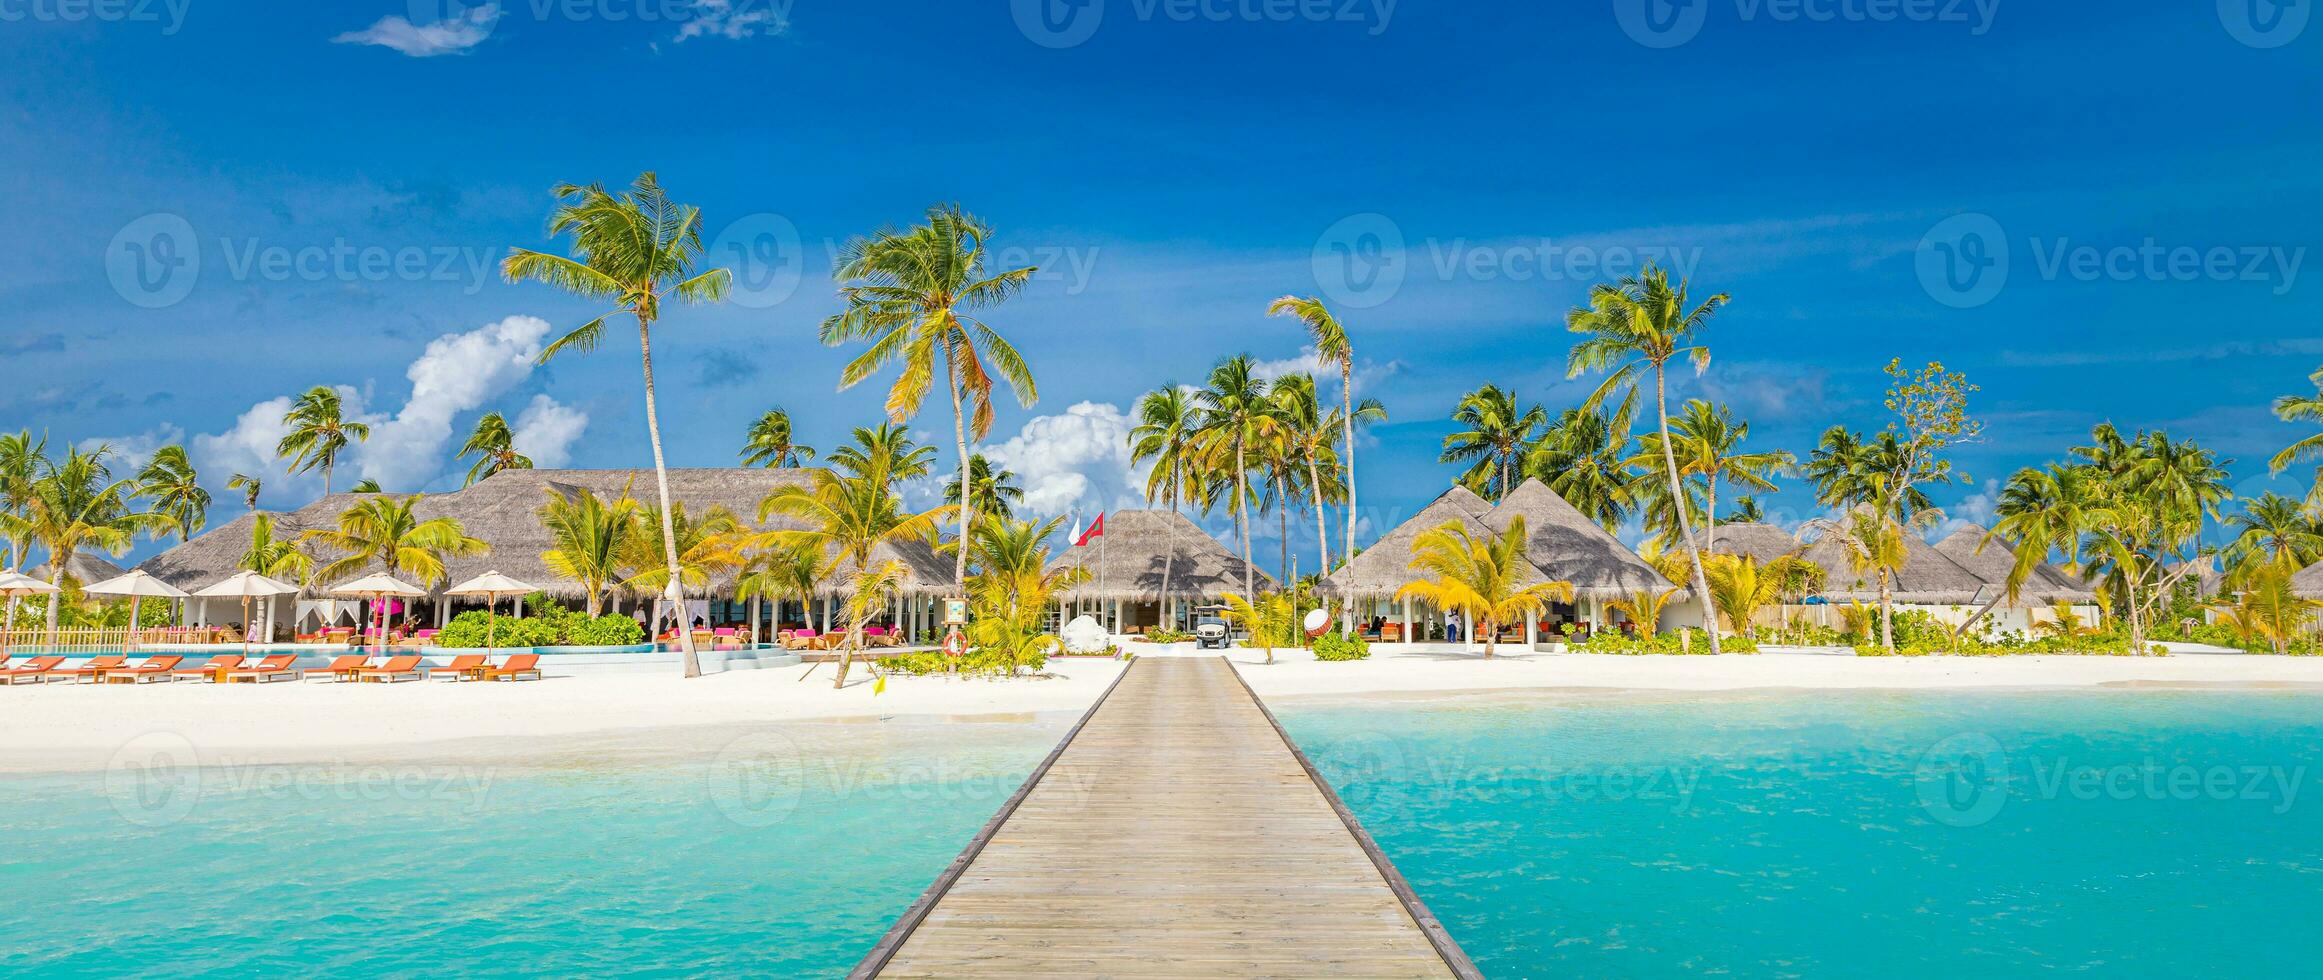 hermosa tropical paisaje fondo, lujo verano viaje y vacaciones. de madera muelle dentro isla en contra azul cielo con blanco nubes, panorámico vista. Maldivas islas embarcadero con palma arboles naturaleza foto